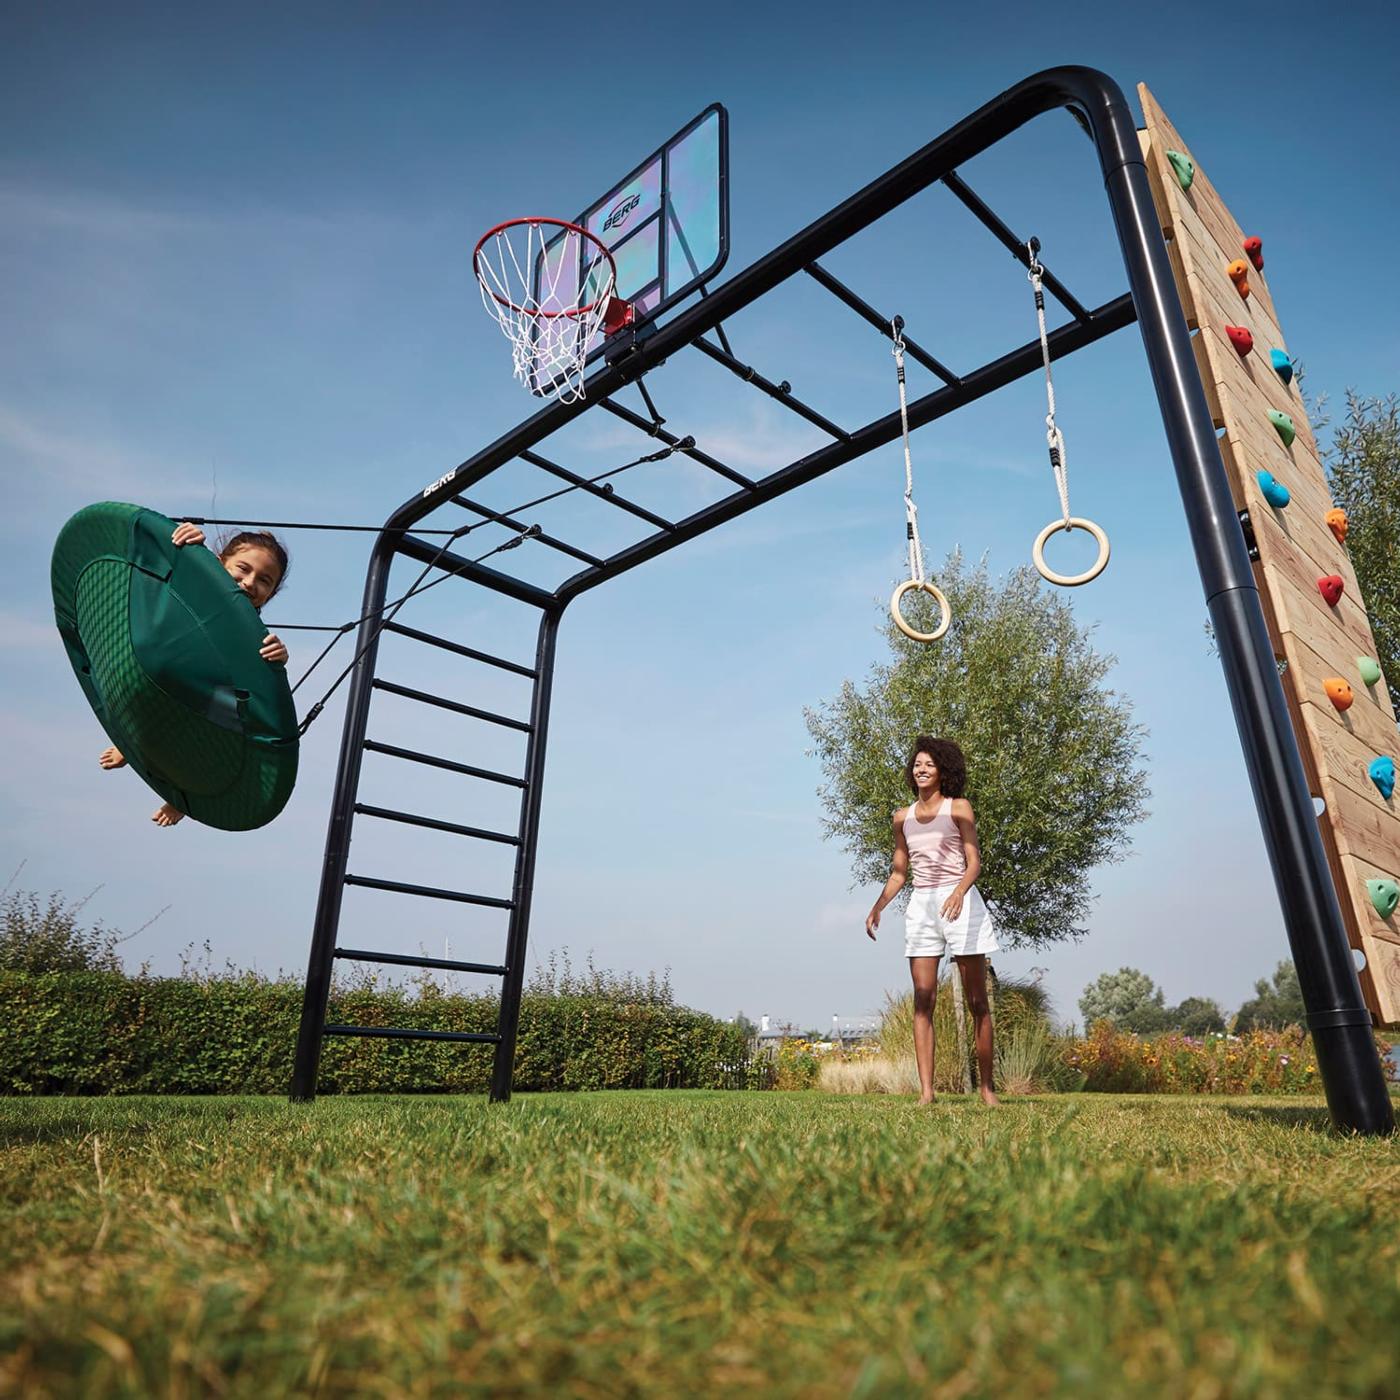 BERG PLAYBASE parc metàl·lic per a nens i adults per jugar, fer esport i relaxar-se